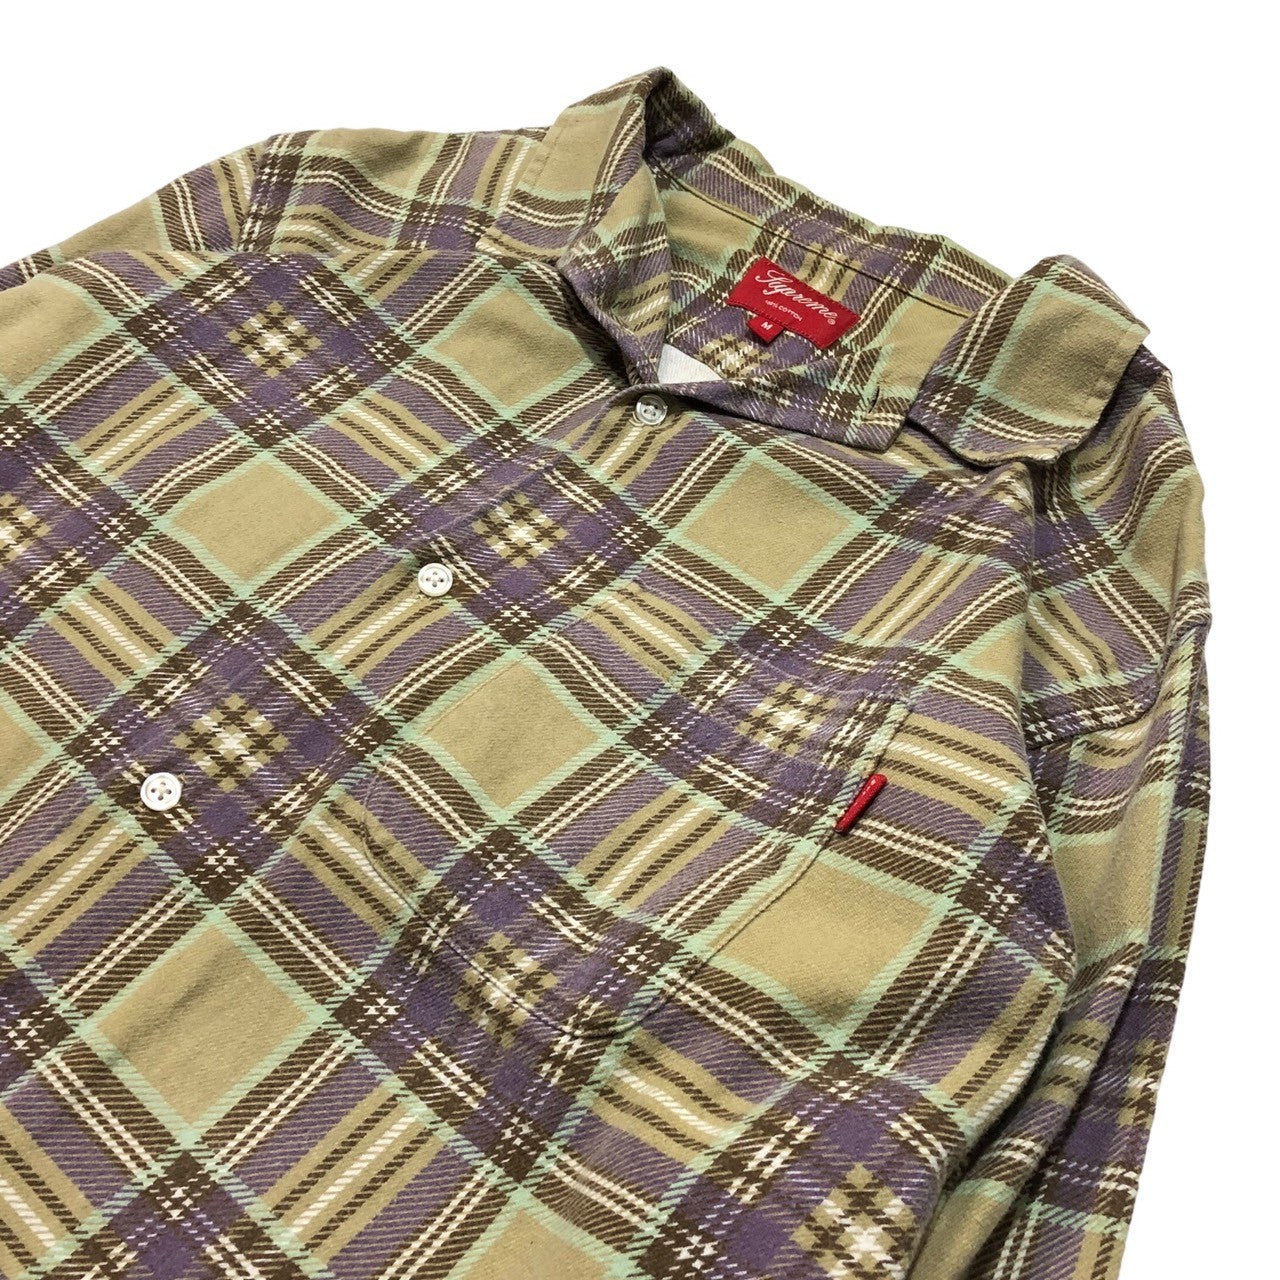 SUPREME(シュプリーム) 20SS Printed Plaid Shirt フランネル チェック シャツ オープンカラー 長袖 M ベージュ×パープル